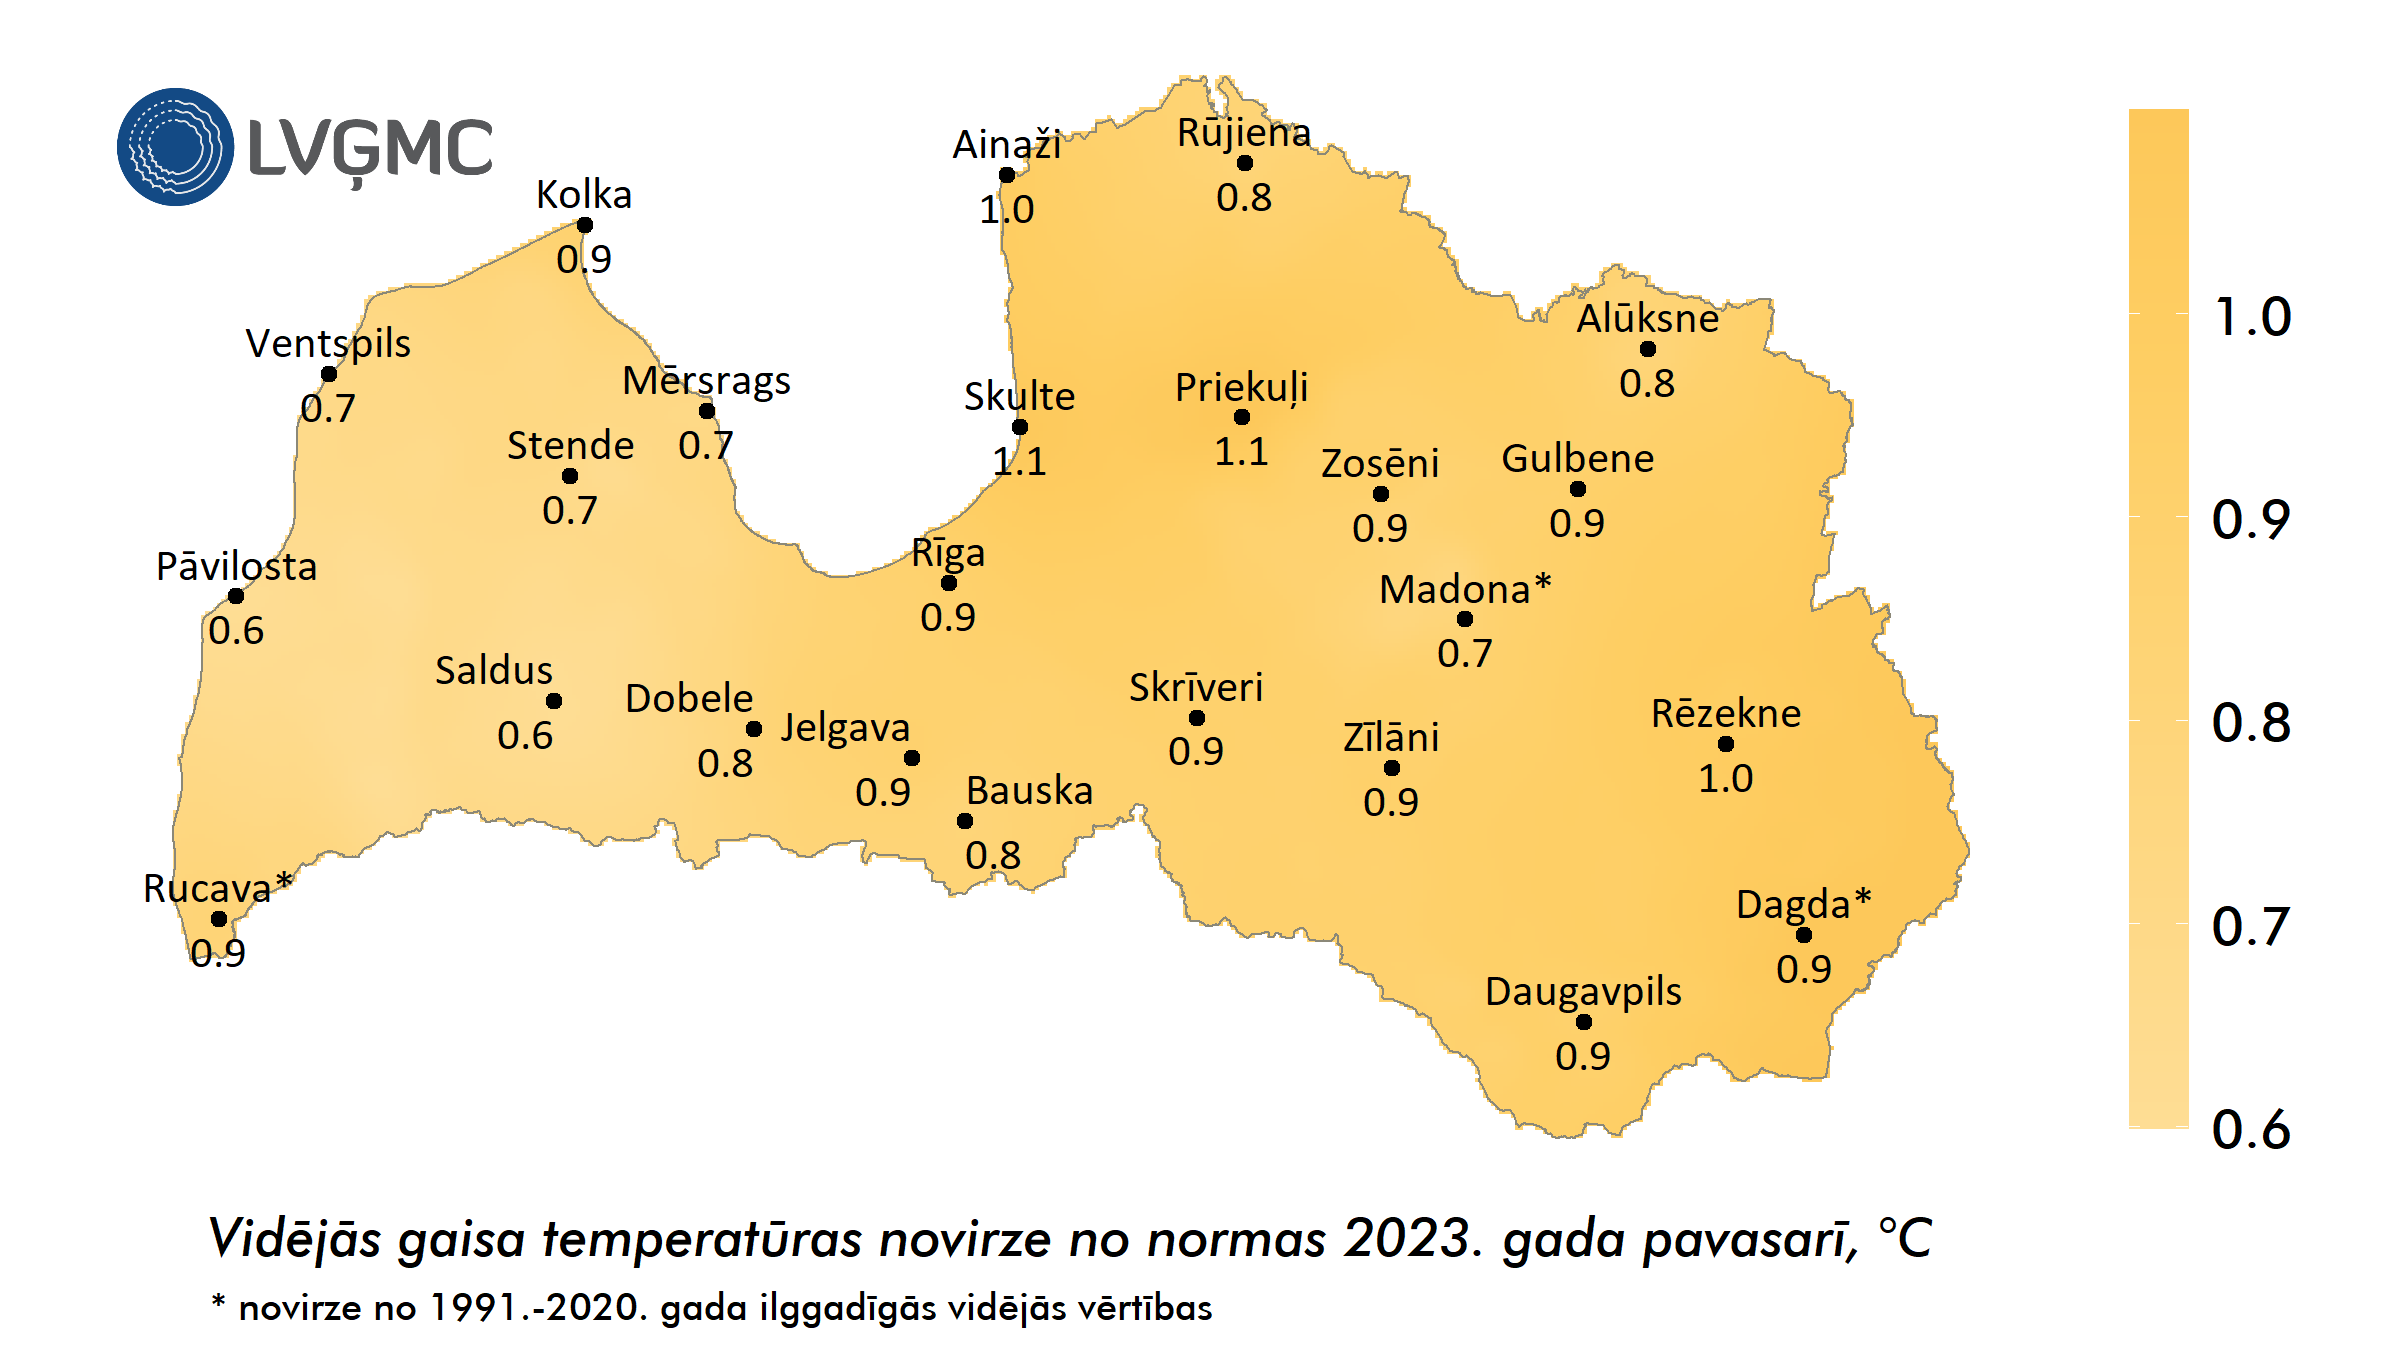 Vidējās gaisa temperatūras novirze no normas 2023. gada pavasarī, °C